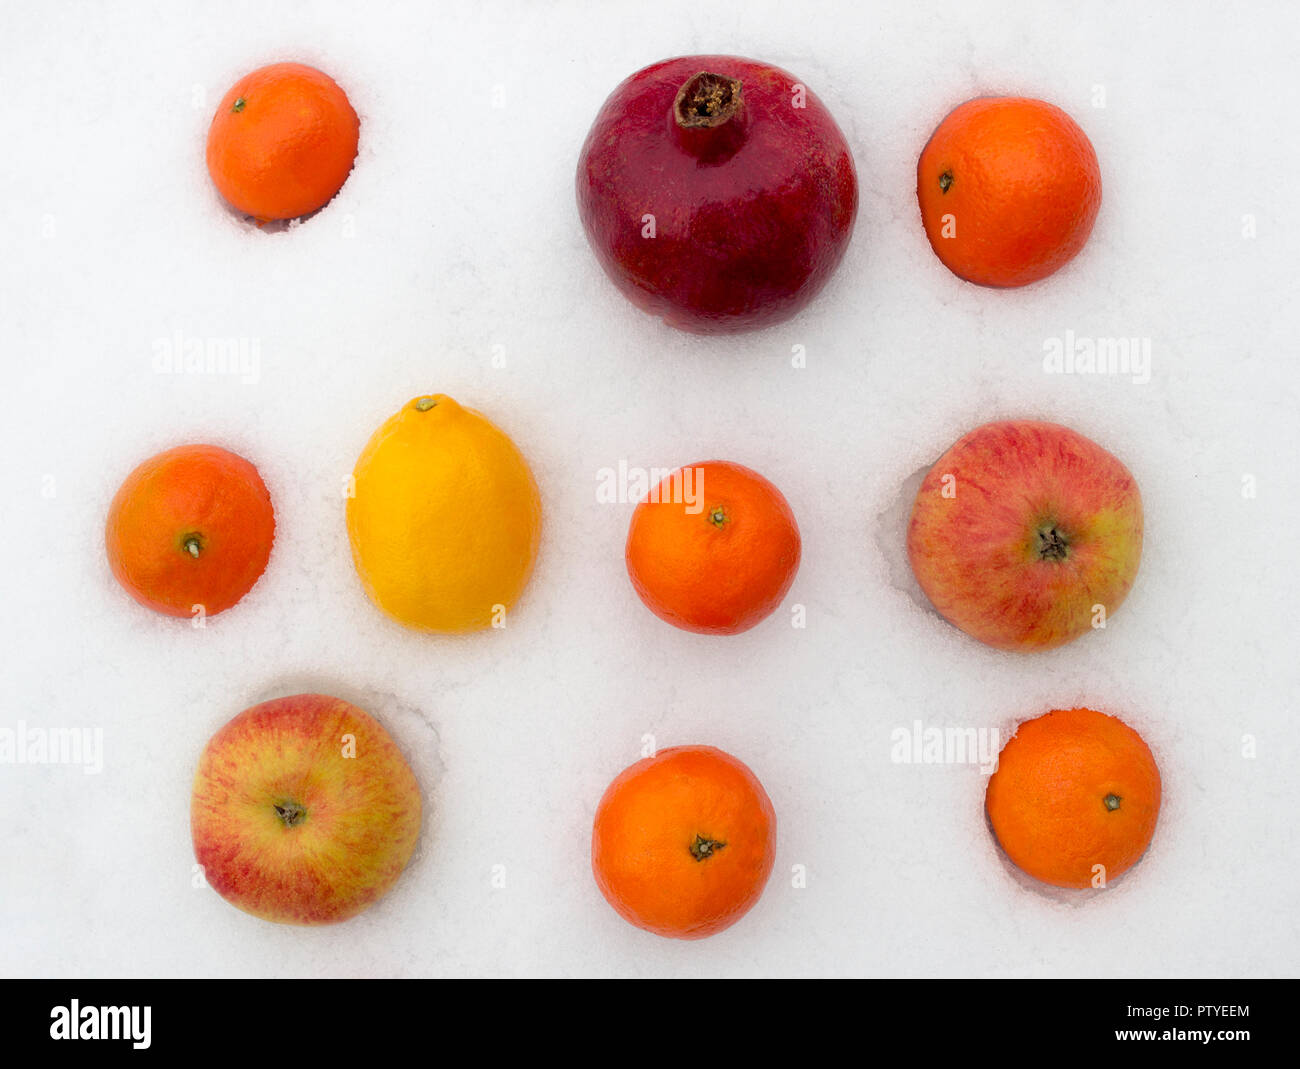 Les fruits sur la neige, la mandarine, citron, pomme, grenade Banque D'Images